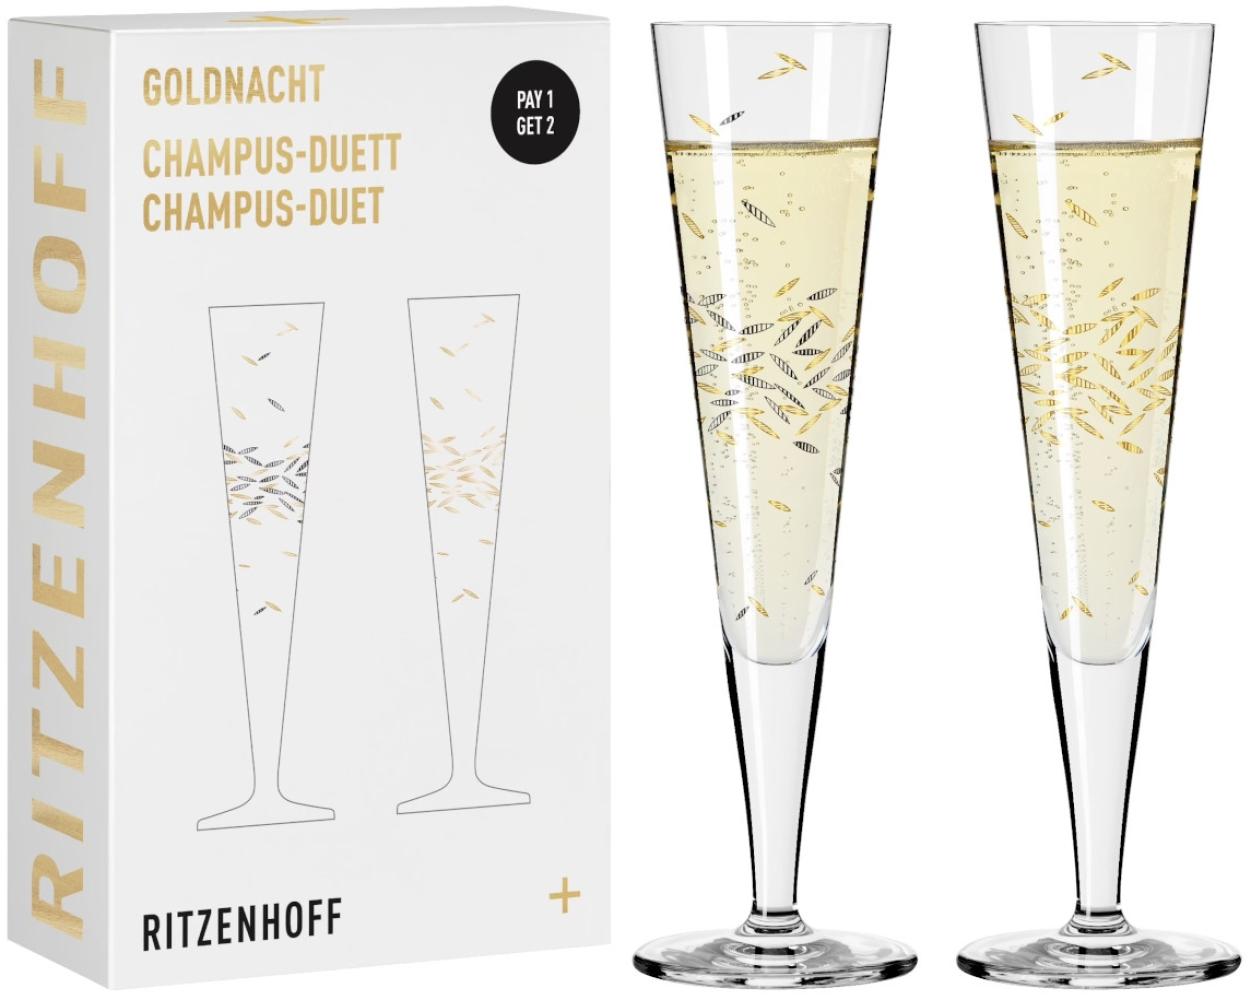 Ritzenhoff 6031003 Champagnerglas-Set H22 GOLDNACHT Ritzenhoff Design Team 2022 Bild 1